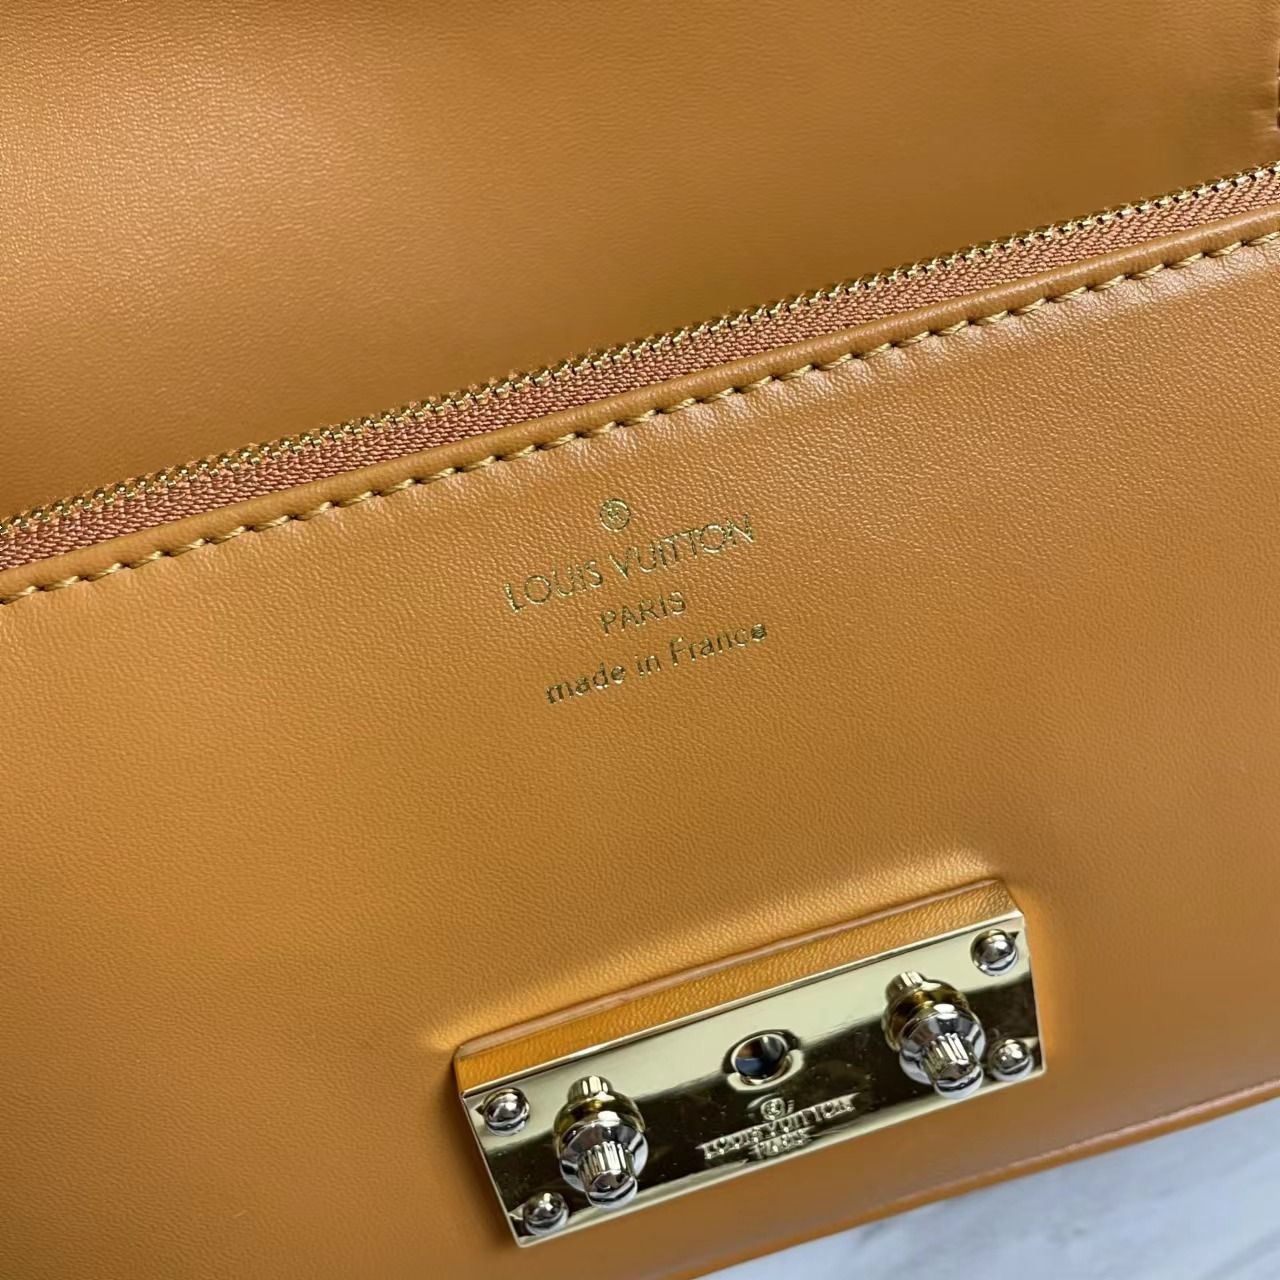 A bag Swing Fashion Leather 24 cm фото 8